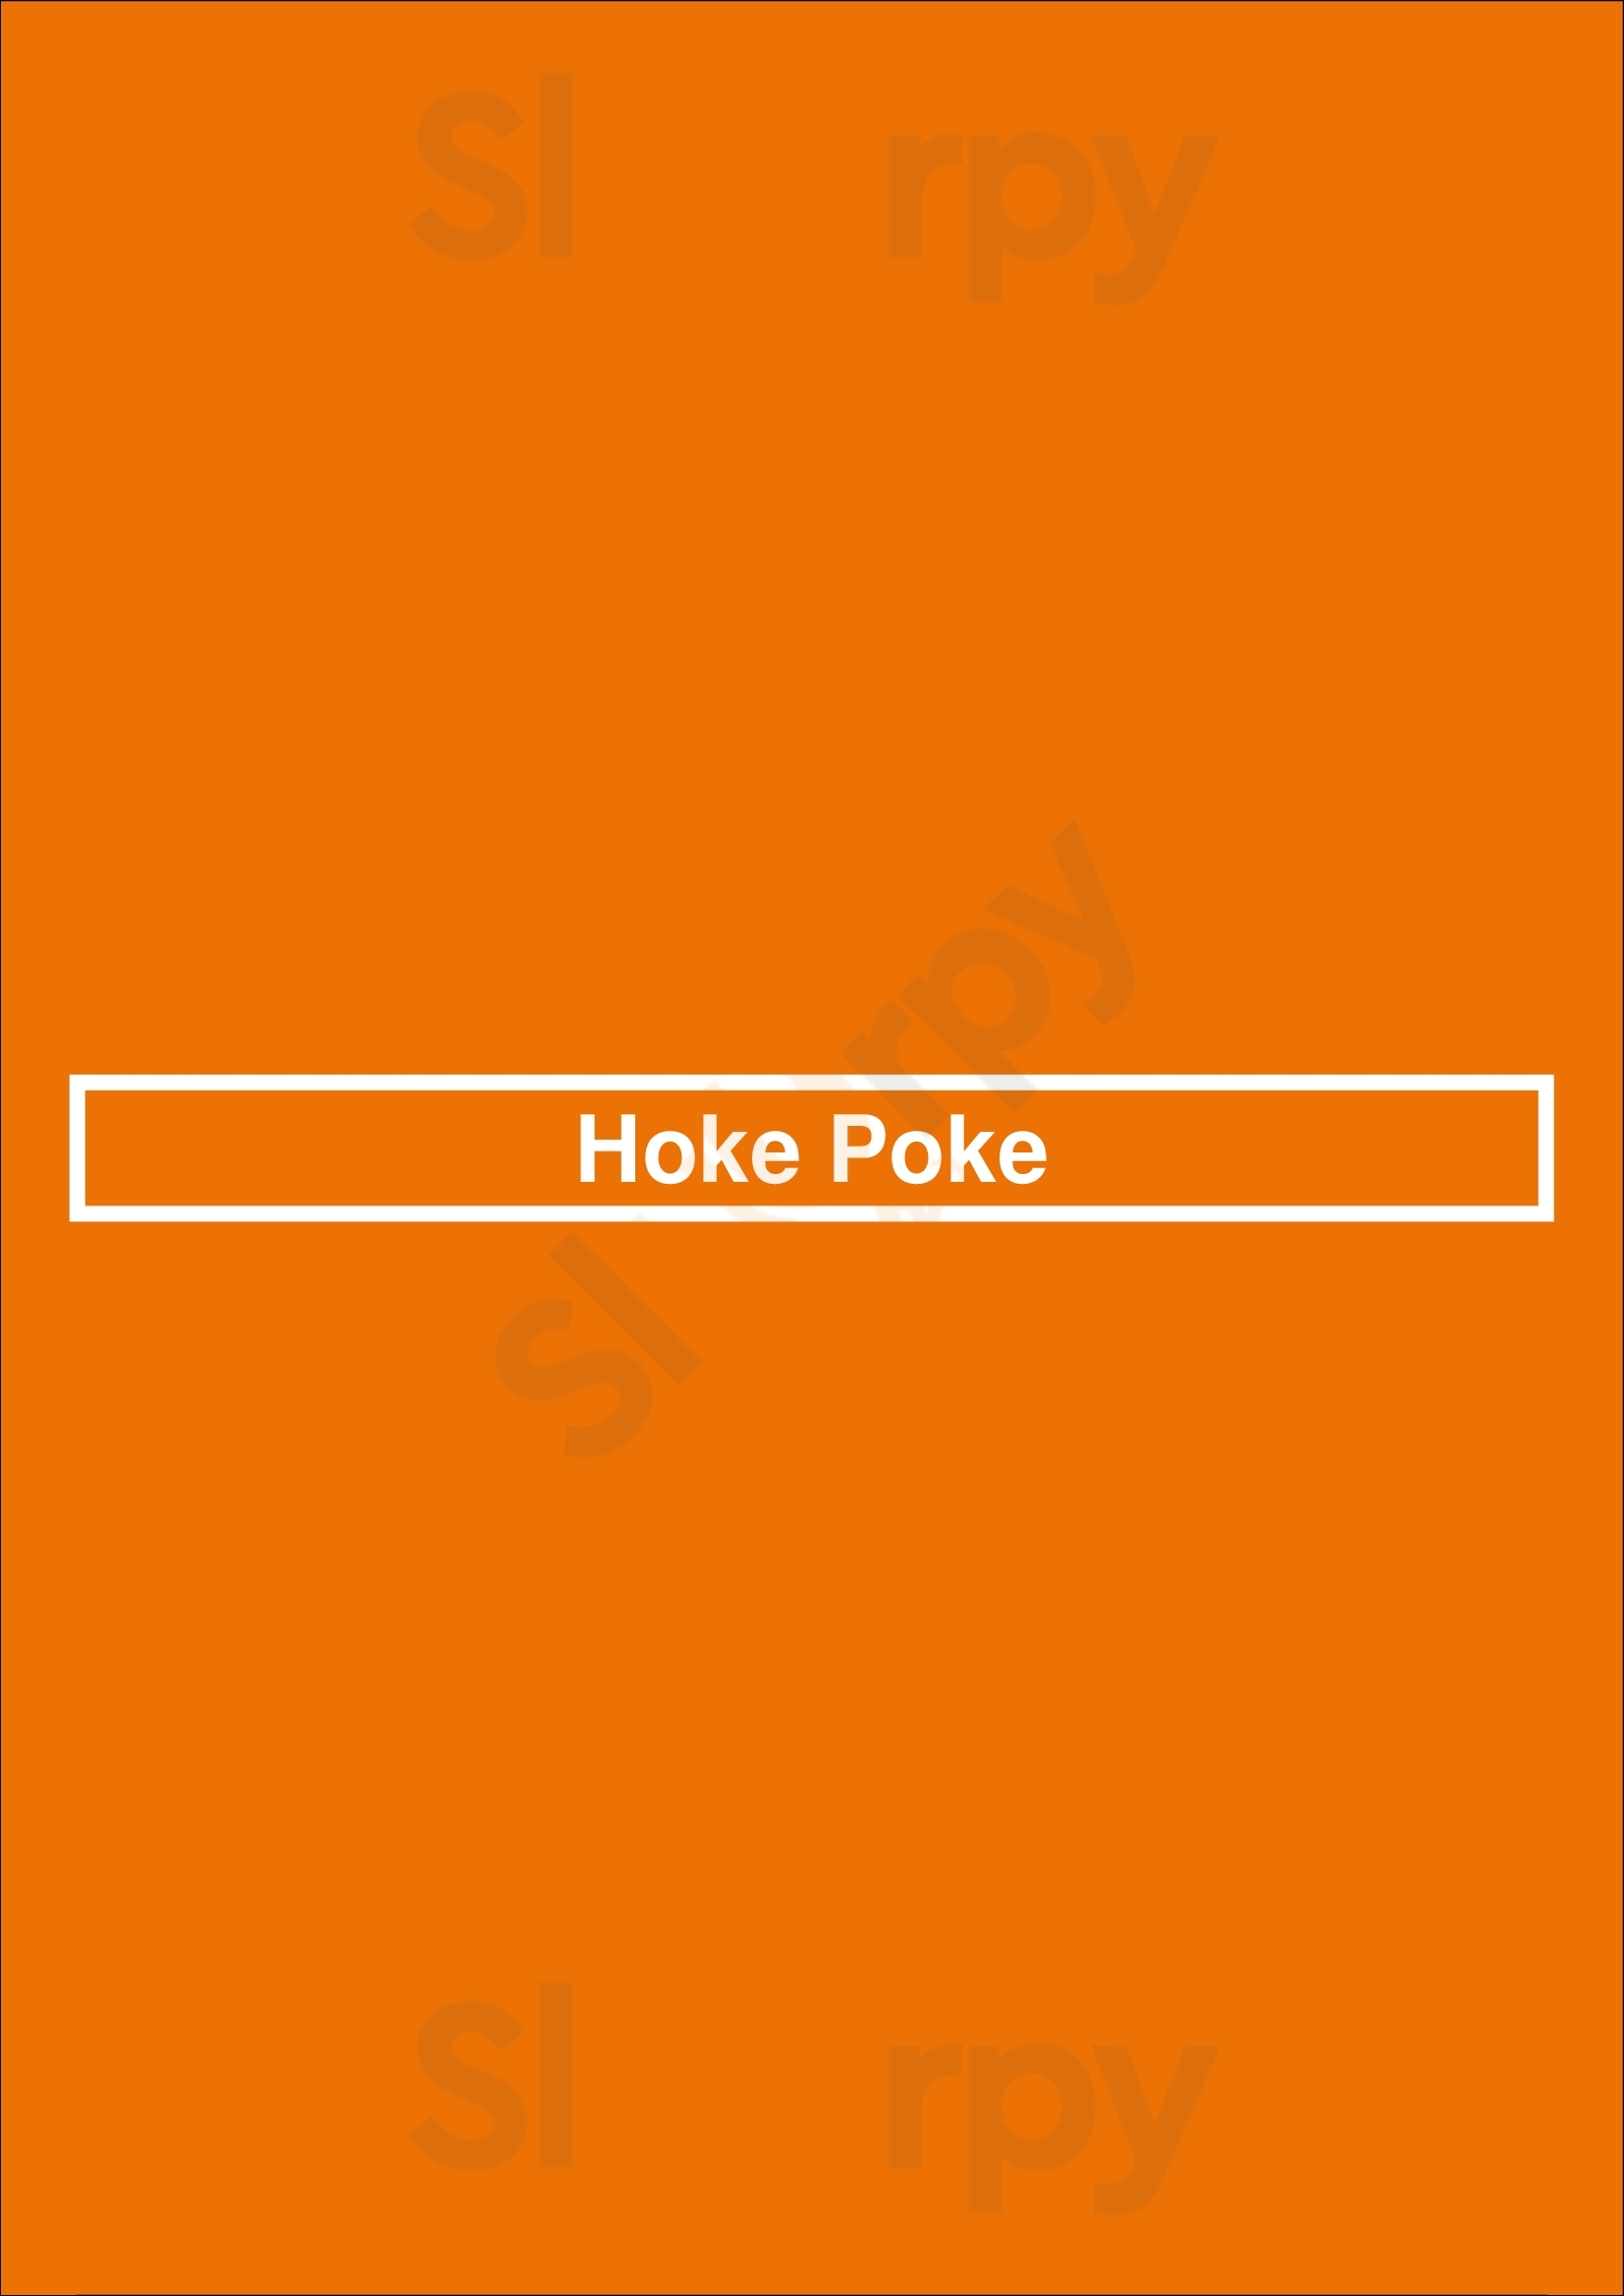 Hoke Poke Los Angeles Menu - 1